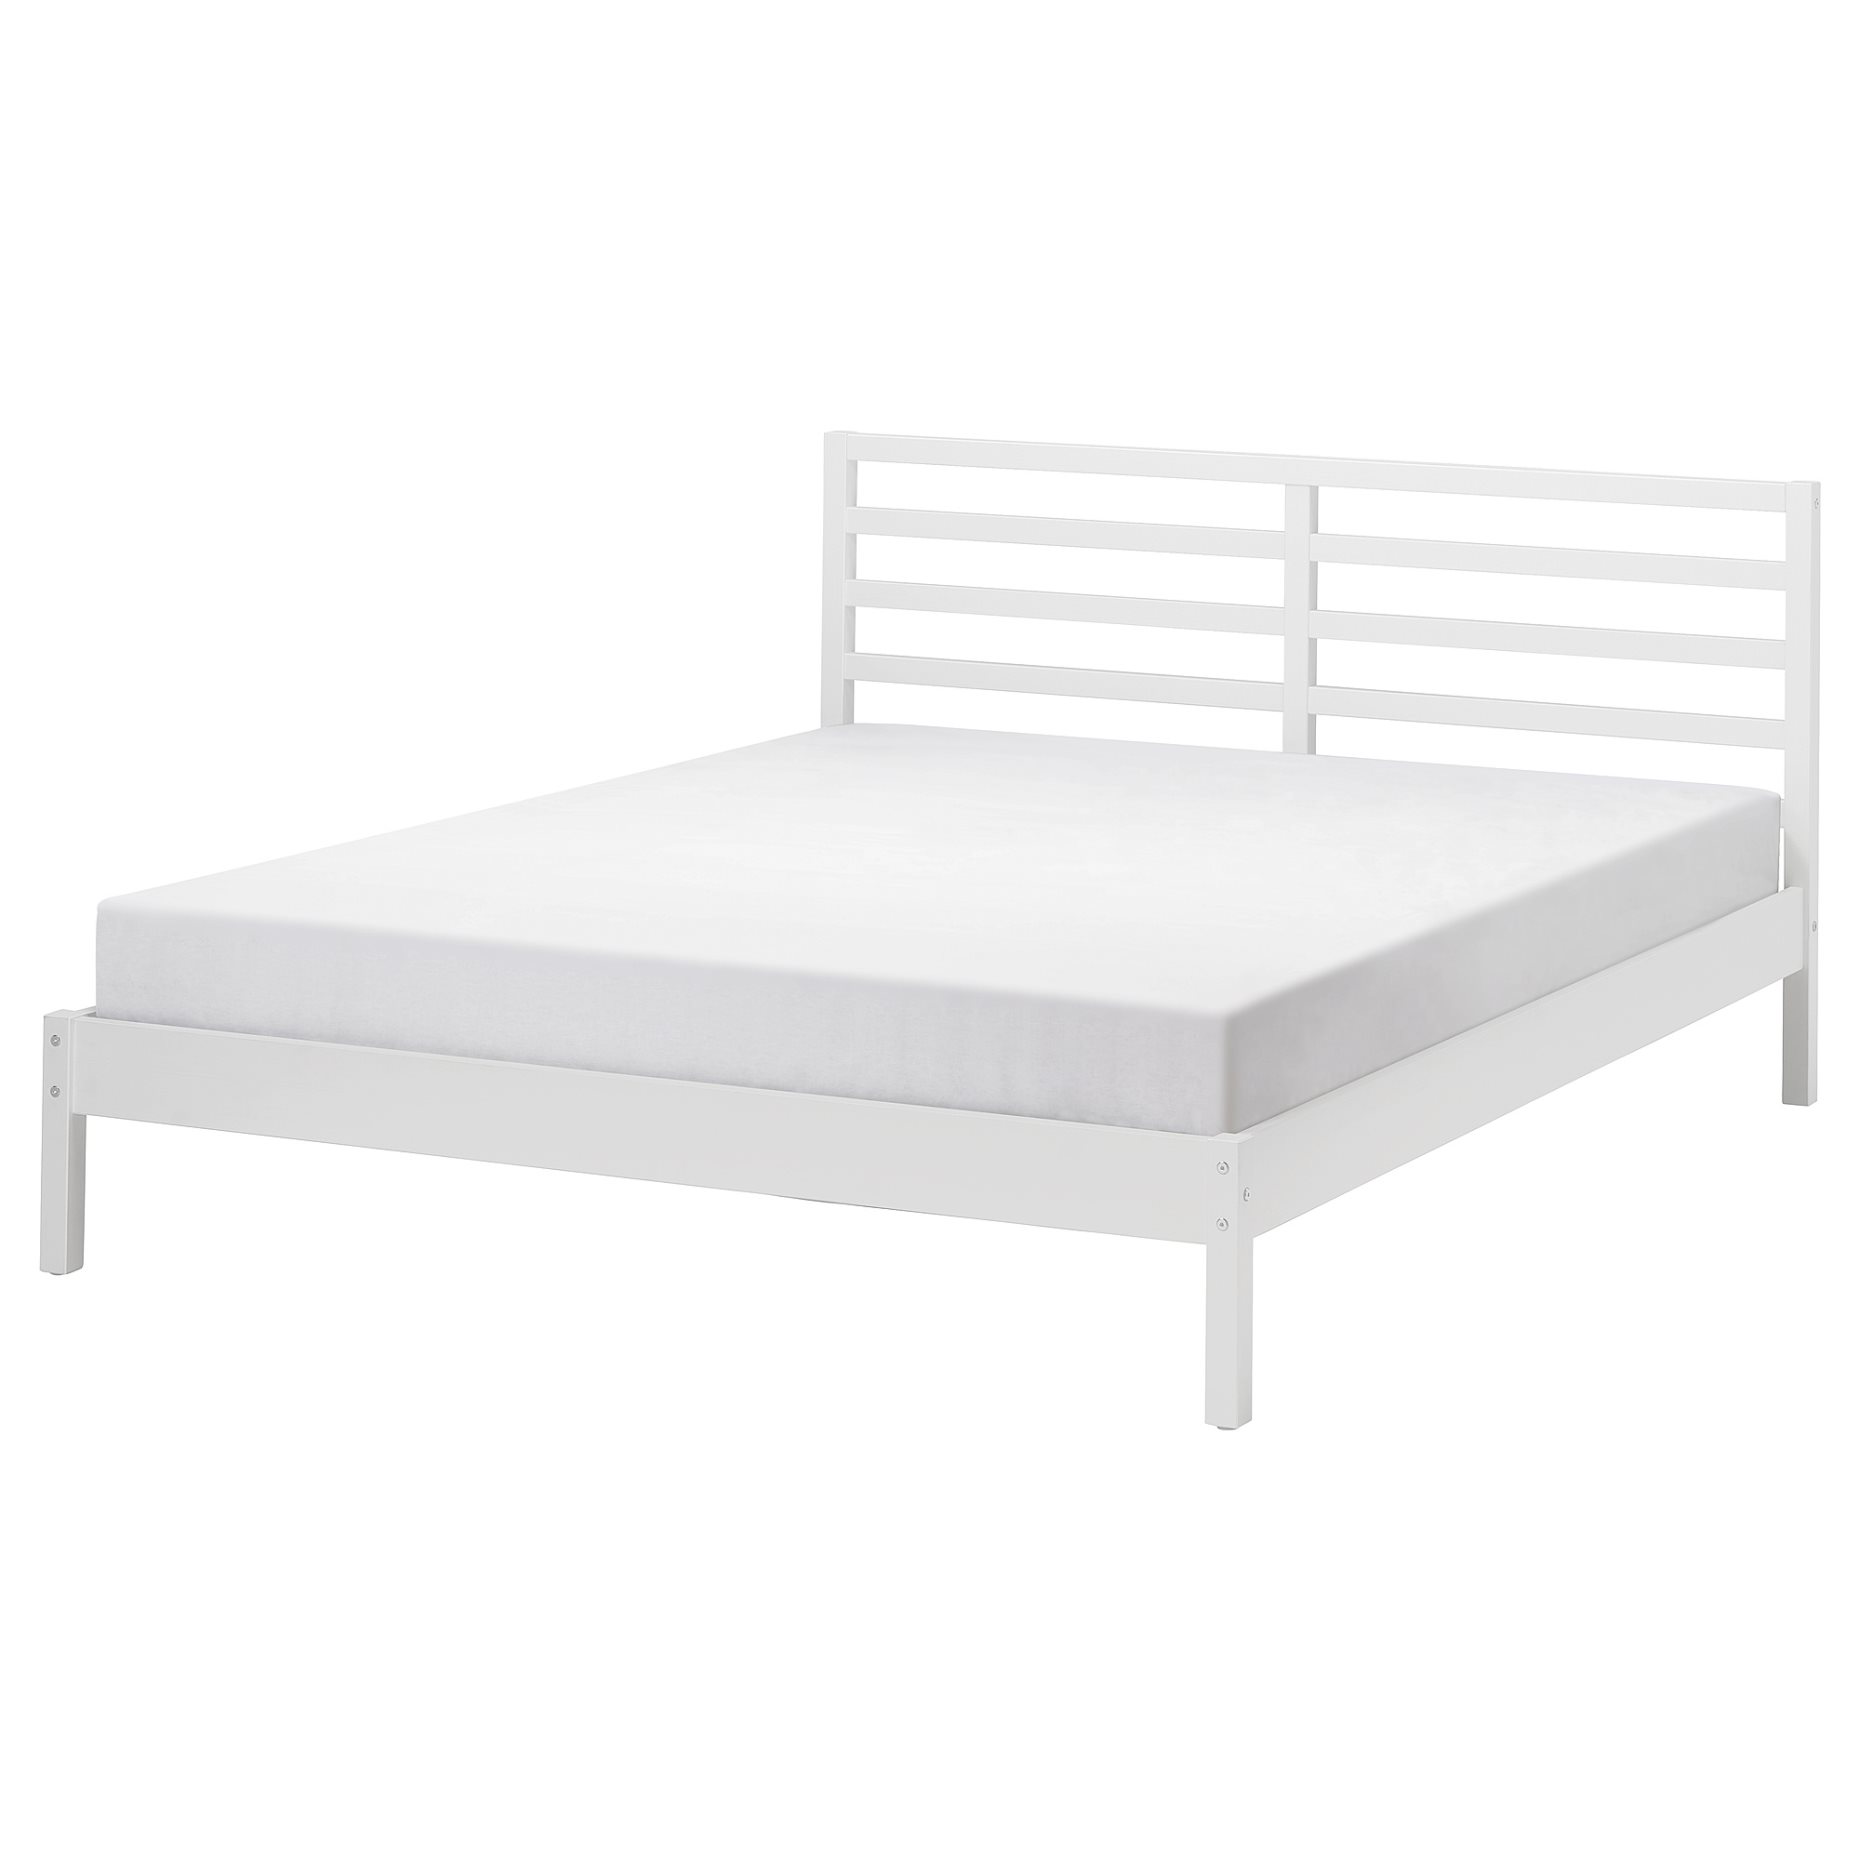 TARVA, bed frame, 140x200 cm, 295.539.72